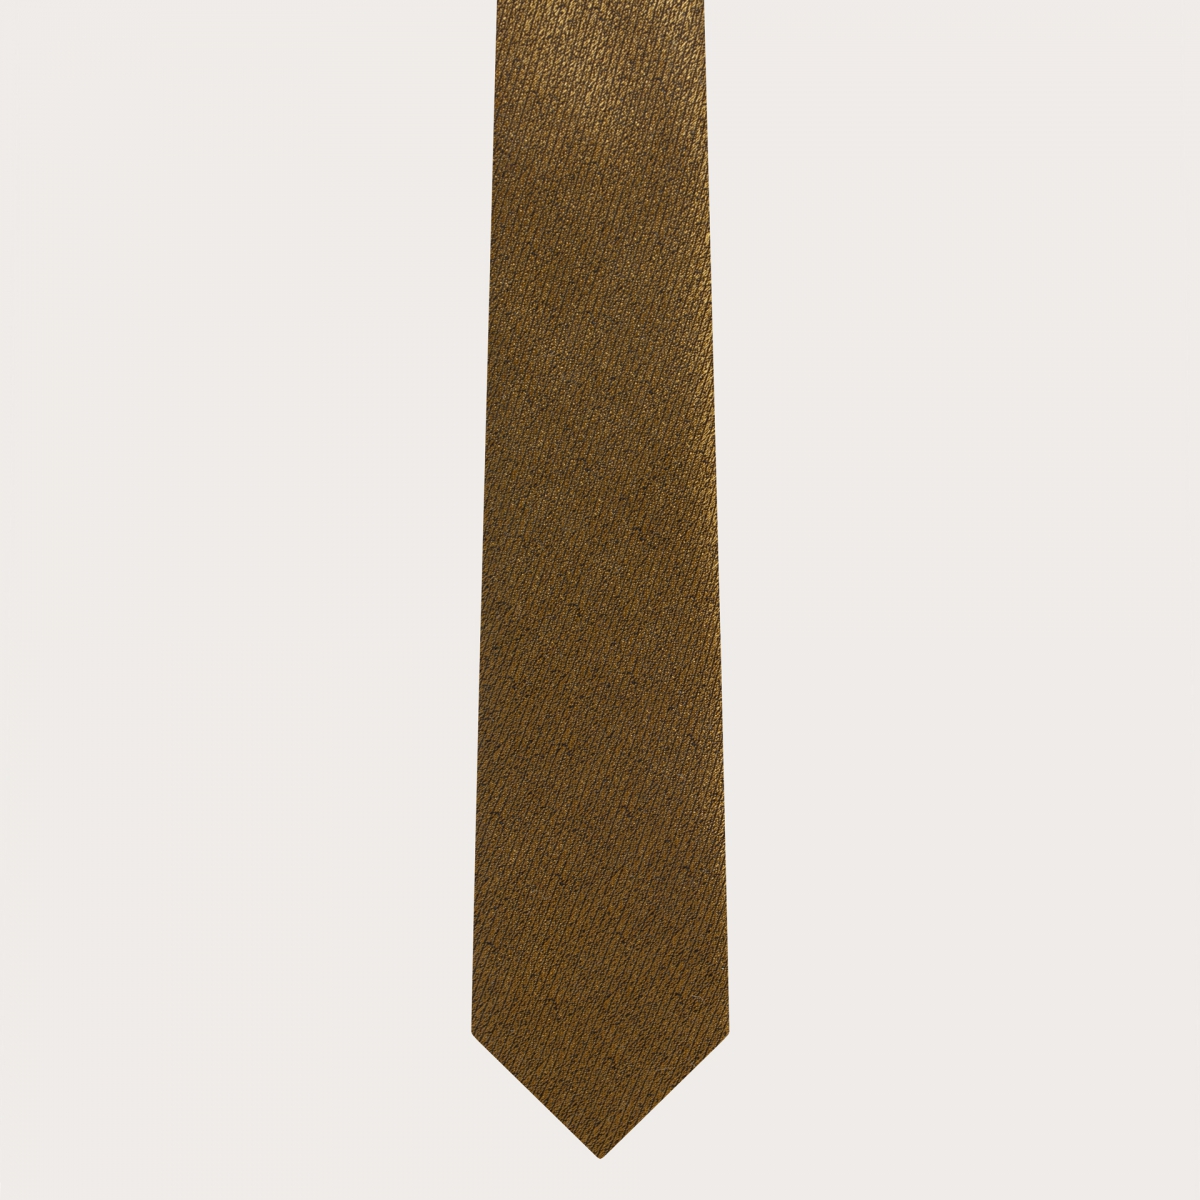 BRUCLE ElegElegantes Set mit dünnen Hosenträgern und Krawatte aus Jacquardseide in schillerndem Gold